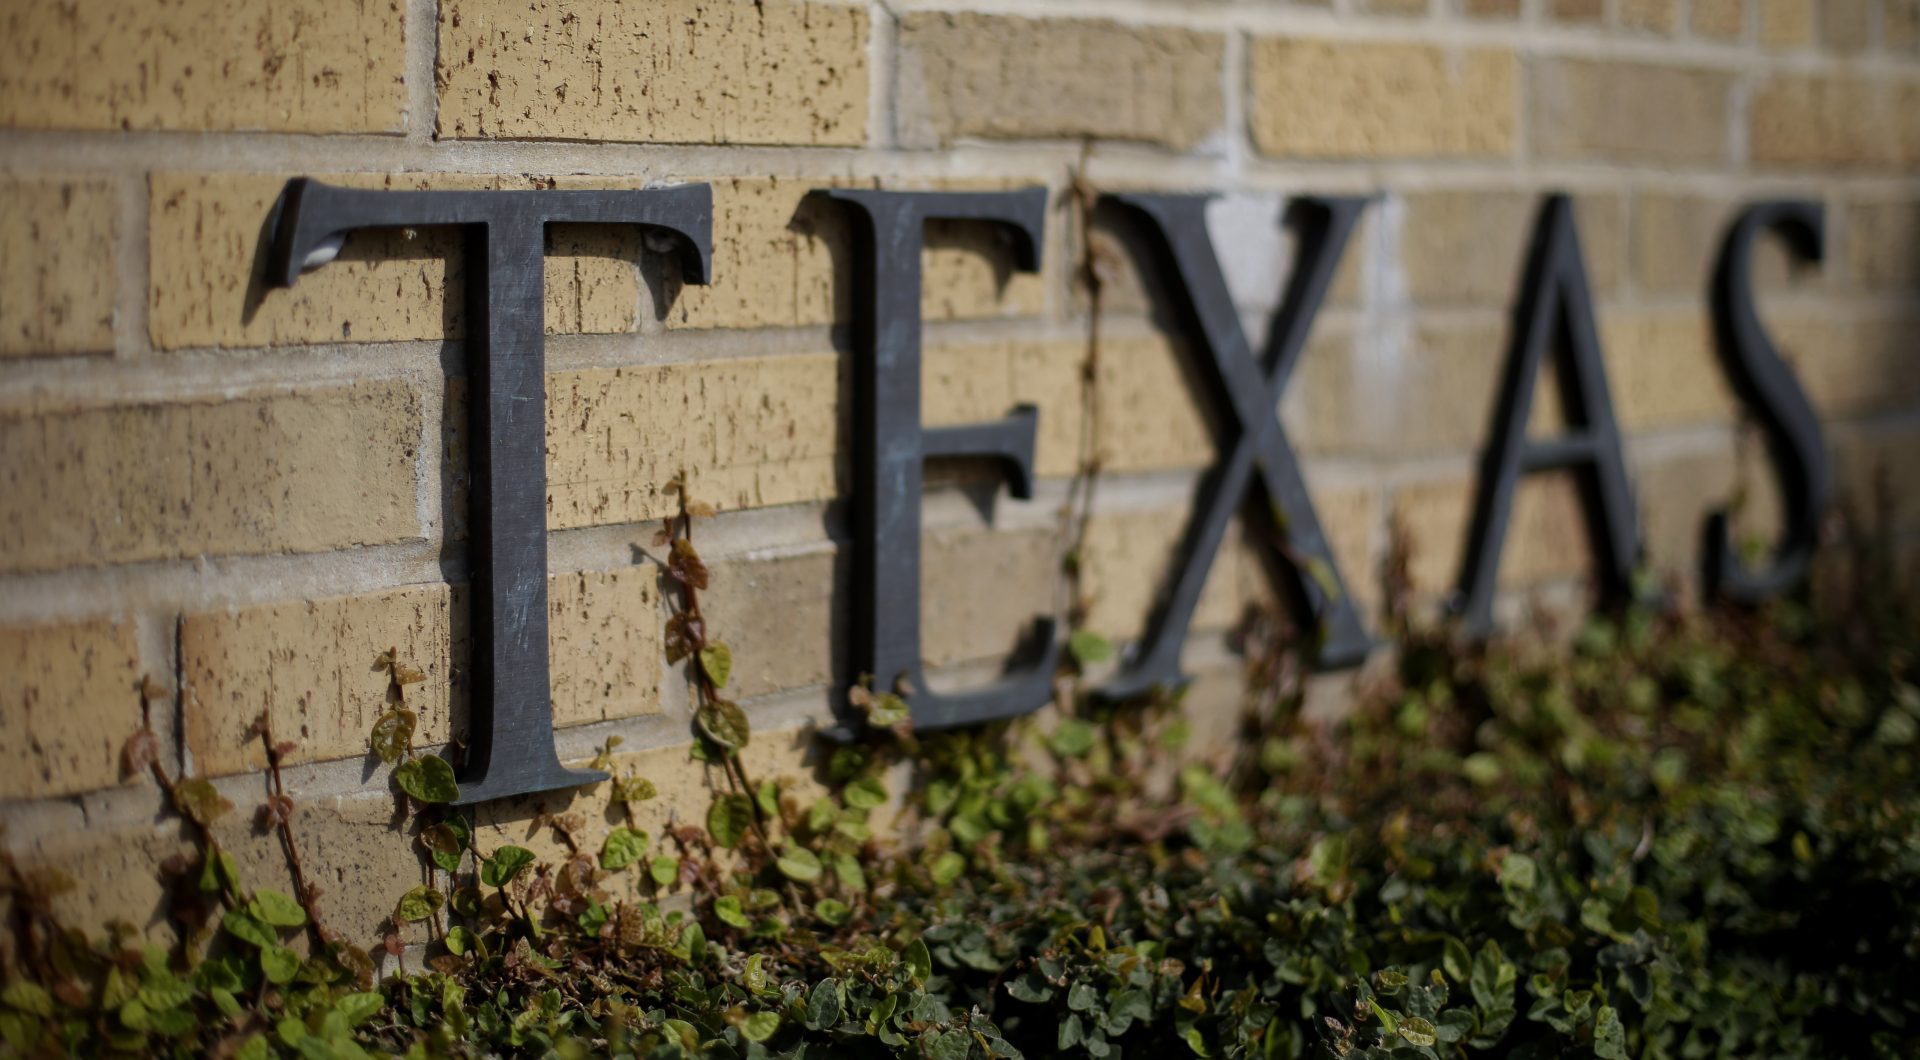 Université du Texas - Mix d'écoles, musées et entreprises